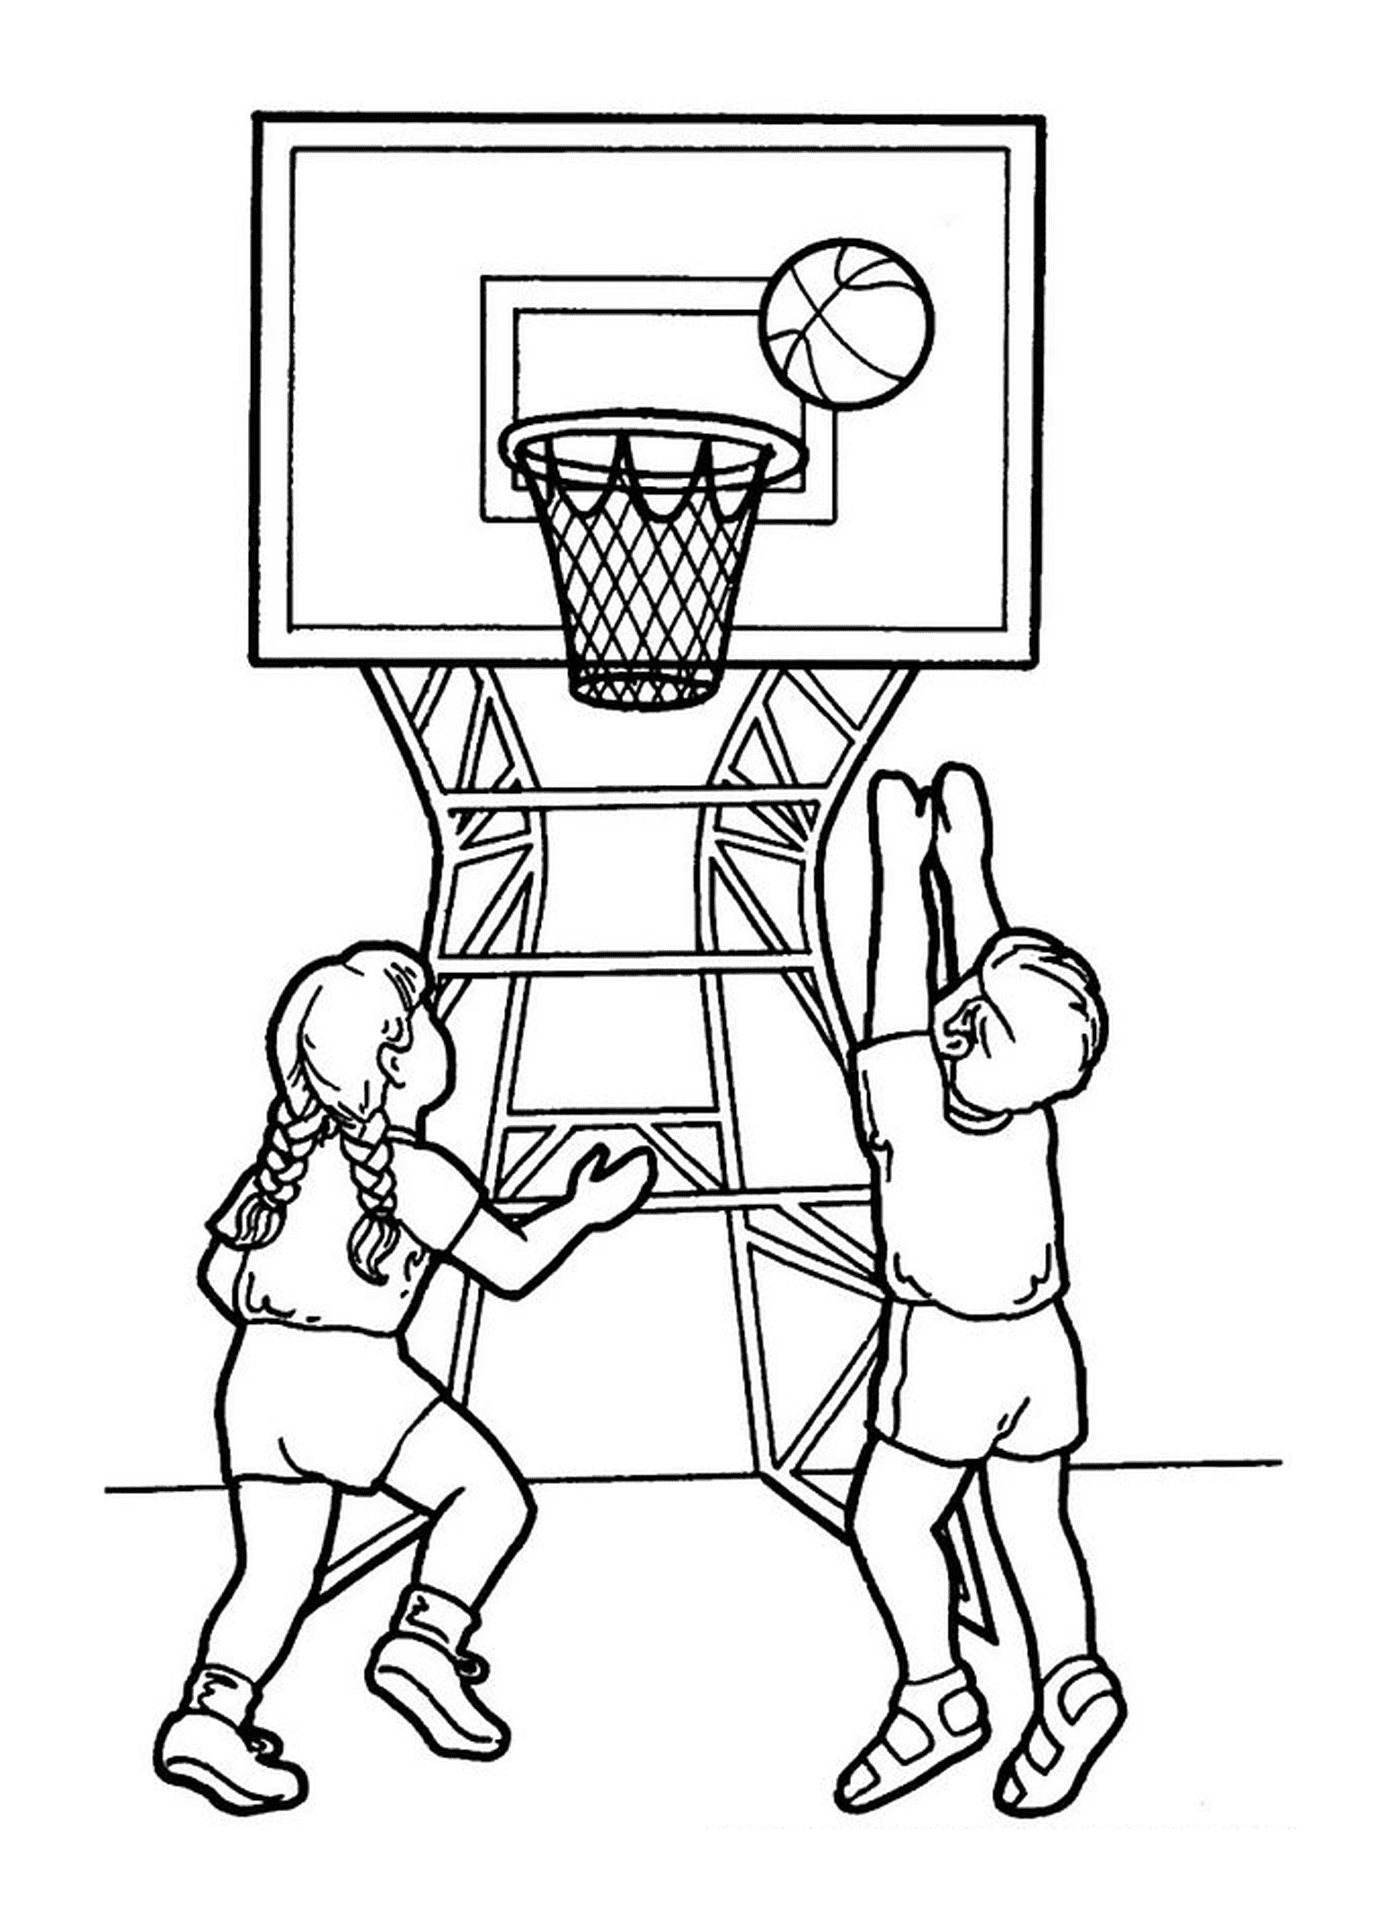  Un niño y una niña juegan al baloncesto 